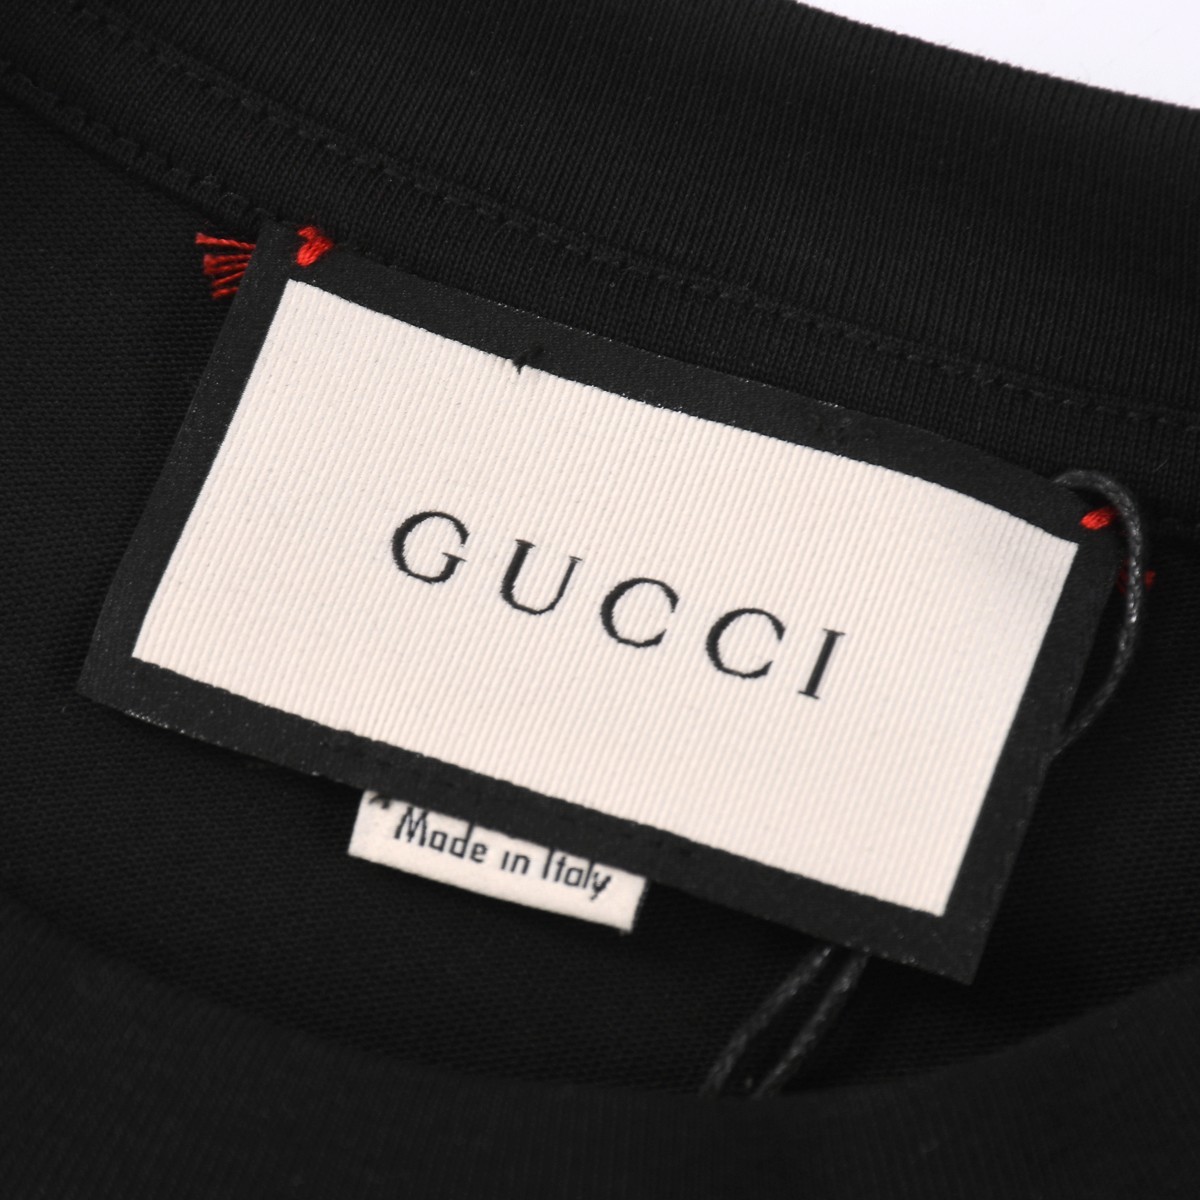 Gucci.24ss最新物语高品质高克重纯棉欧潮版短袖T恤前后刺绣工艺要求车线做工符合精品要求超级好搭配